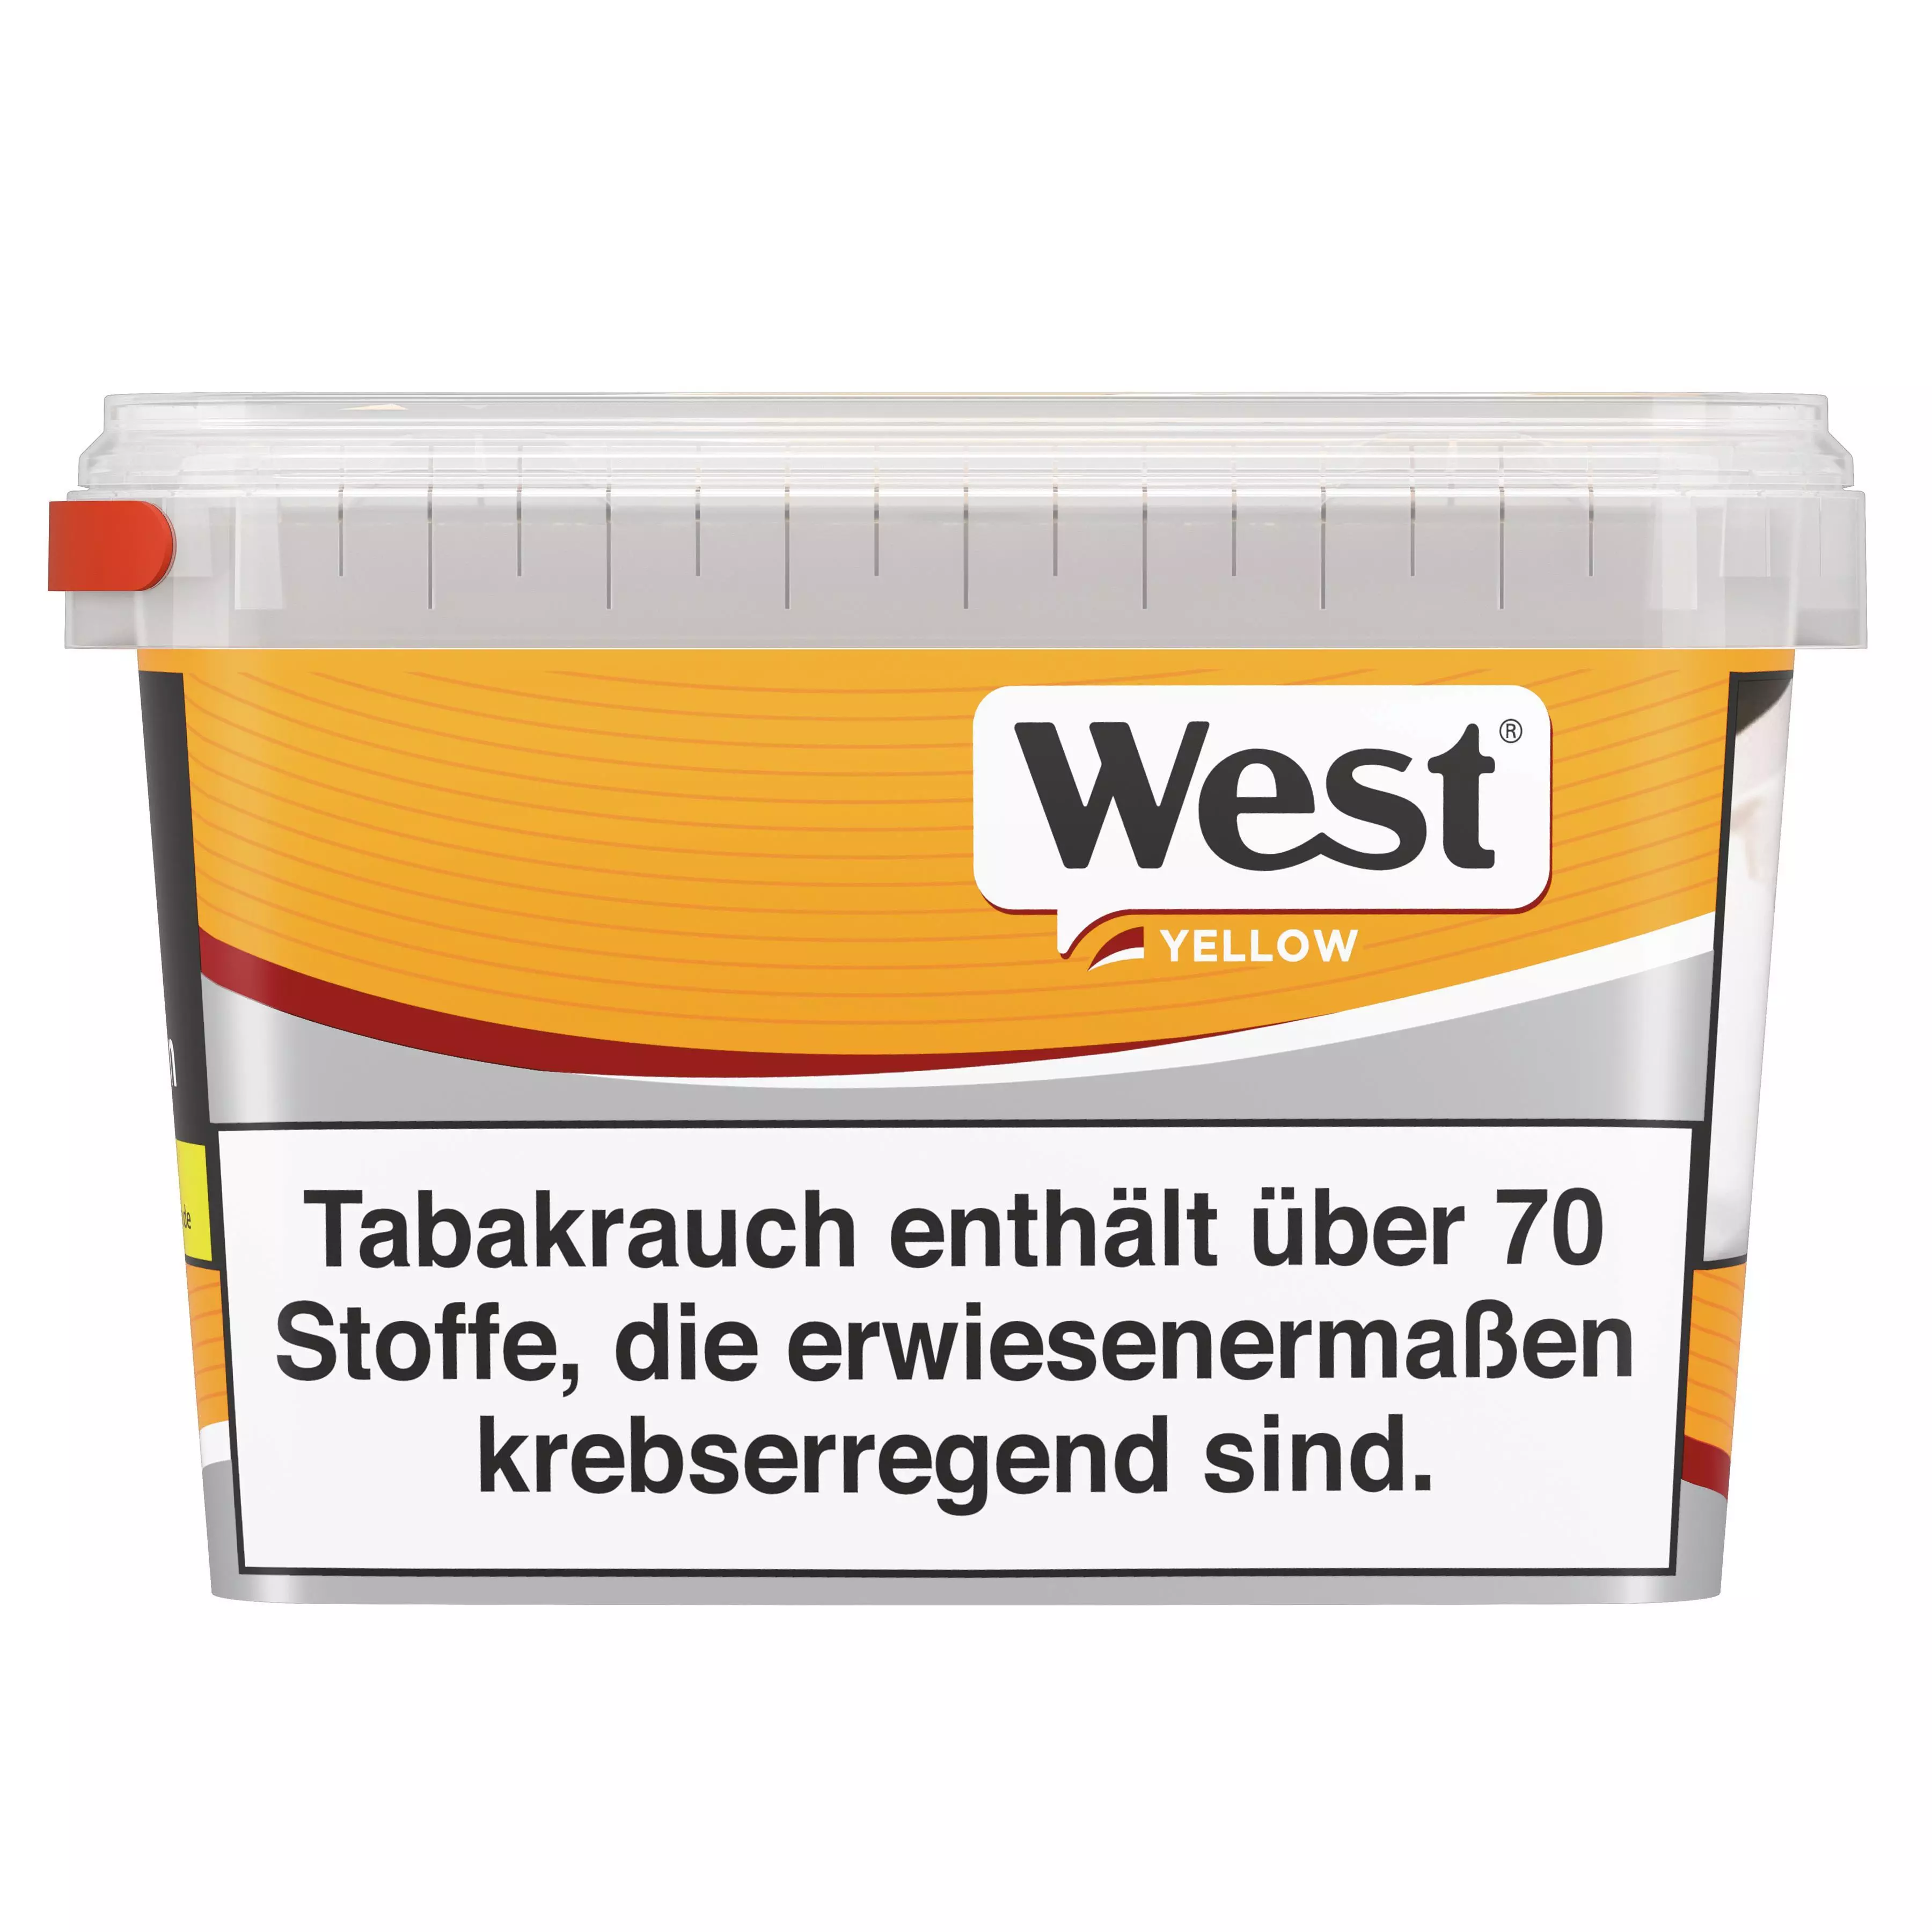 West Yellow Volumen Jumbo Box 1 x 140g Tabak